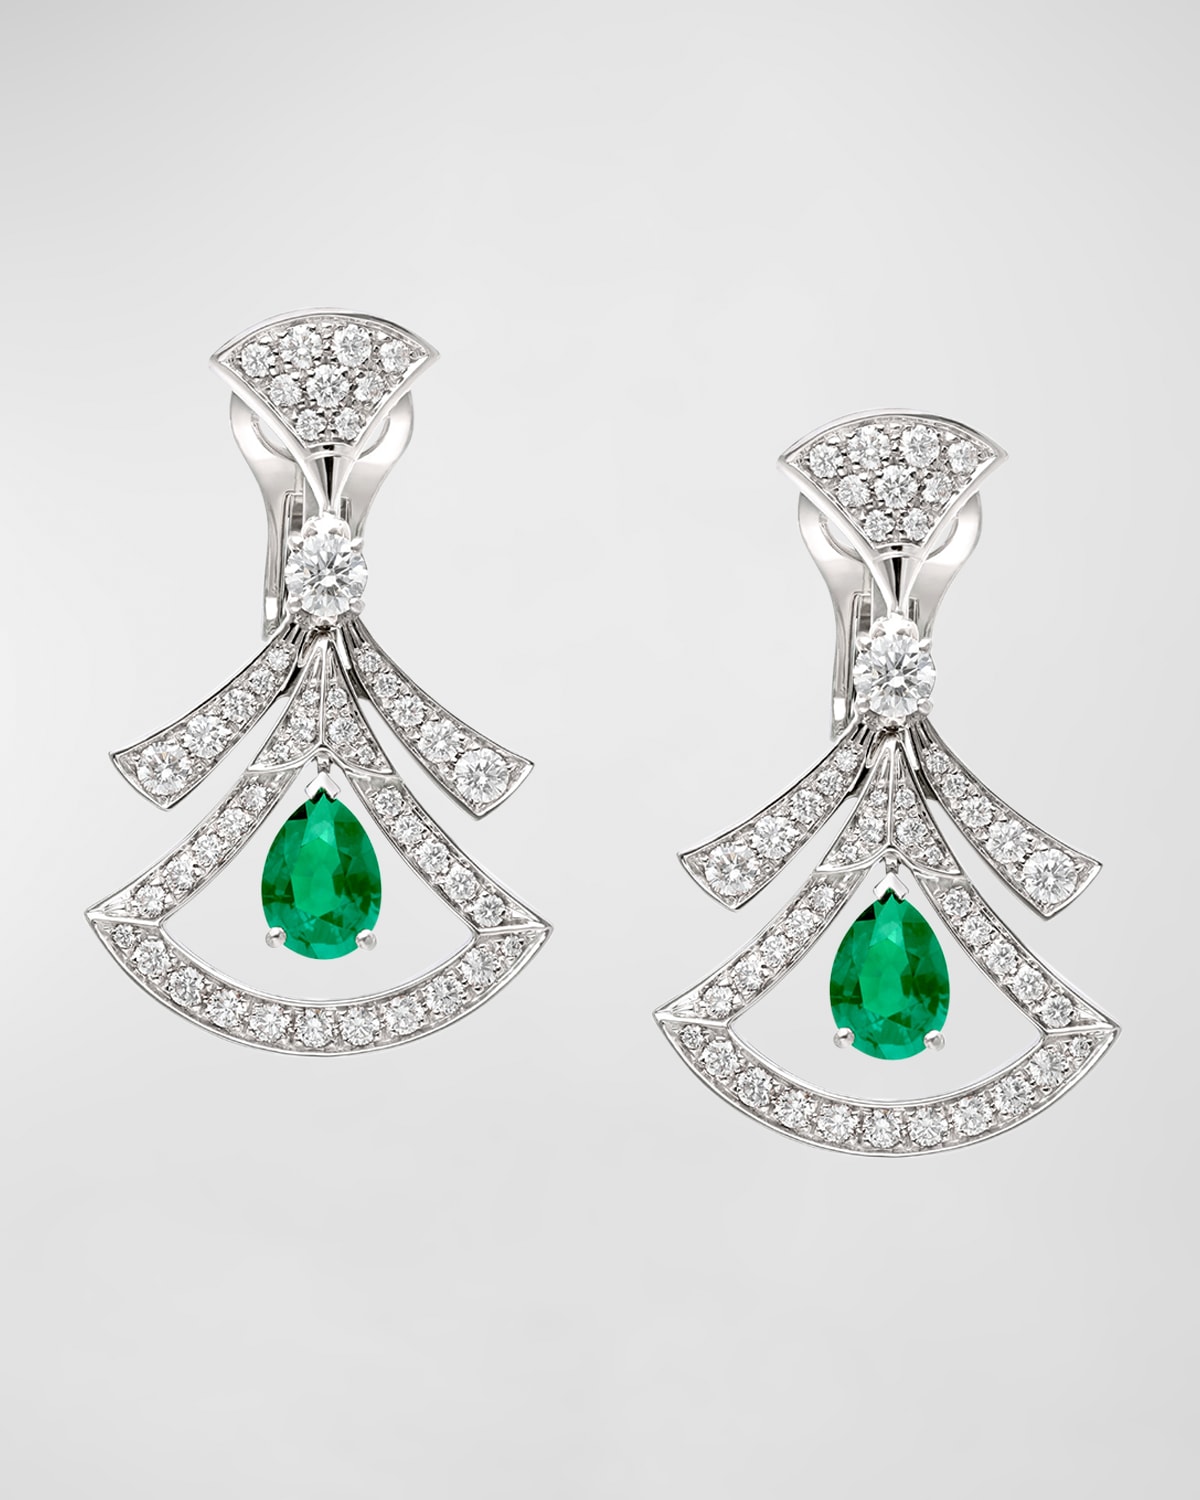 Divas' Dream 18K White Gold Diamond and Emerald Earrings